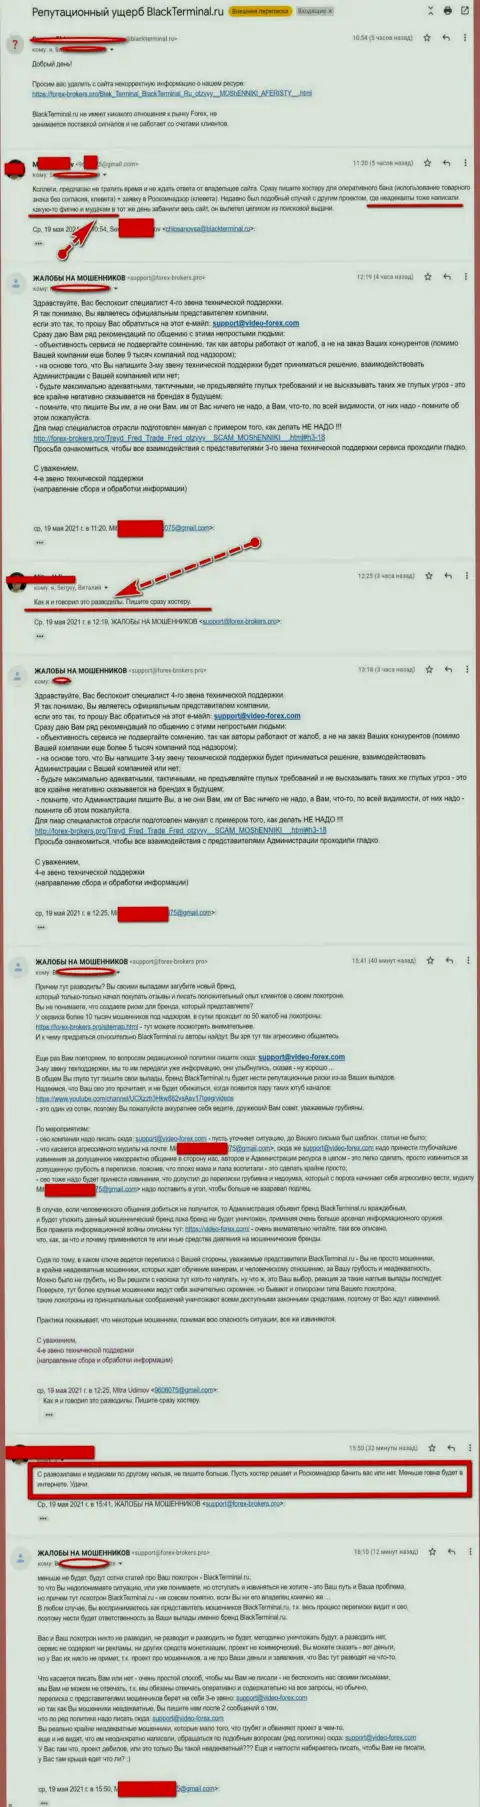 Онлайн переписка Администрации веб-сайта, с отзывами об BlackTerminal Ru, с некими представителями указанного противозаконно действующего сервиса